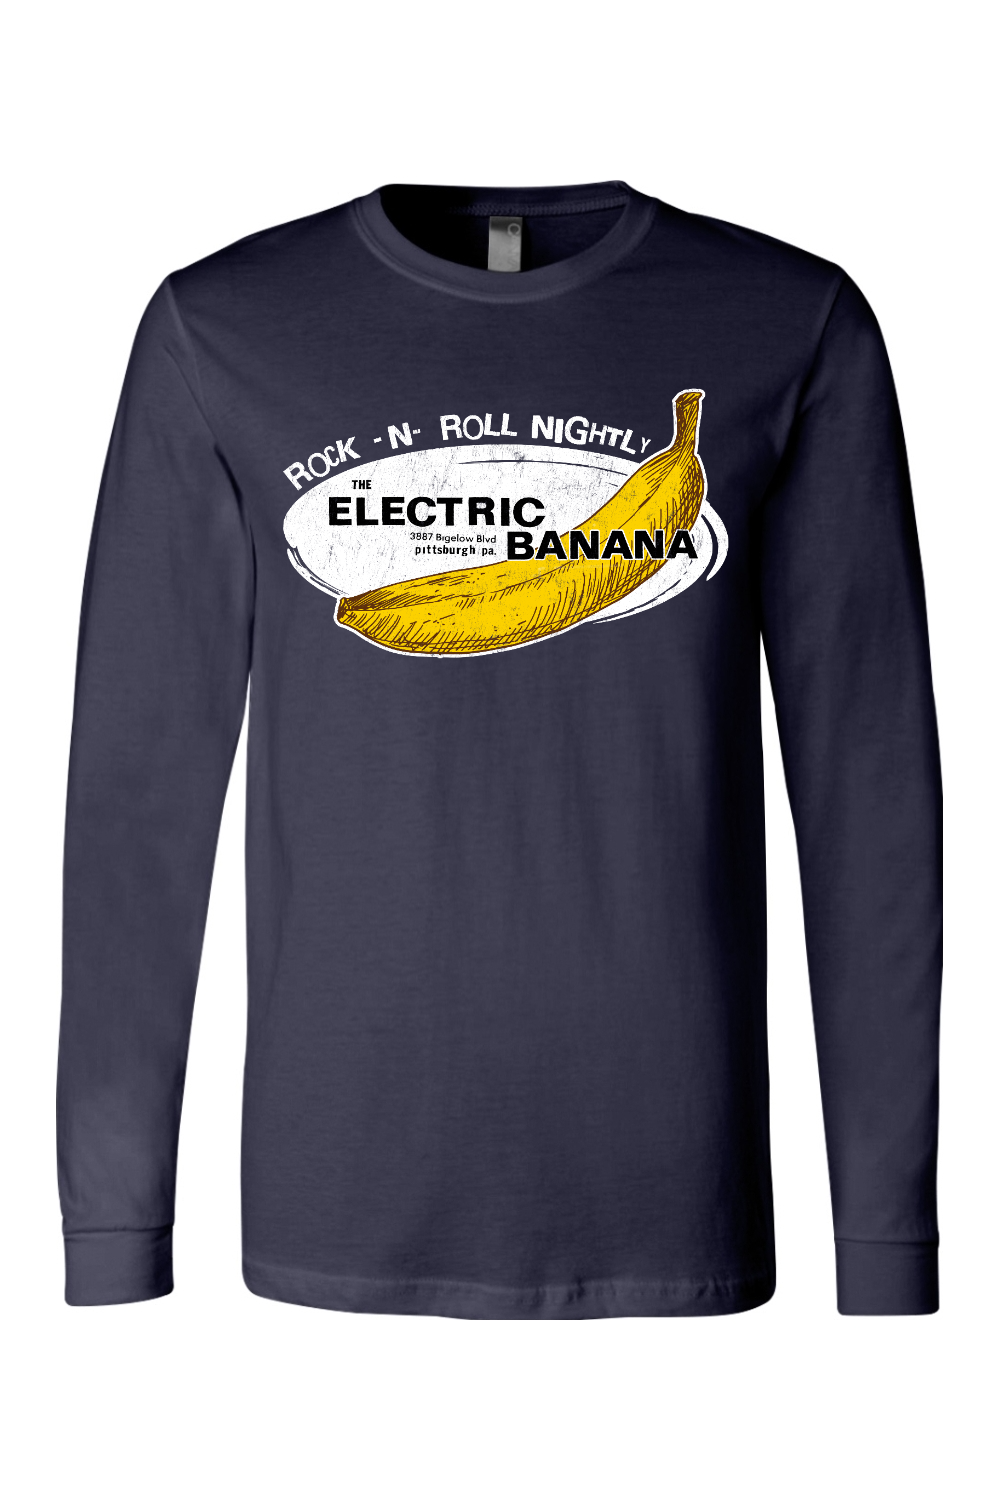 Electric Banana - Pittsburgh, PA - Long Sleeve Tee - Yinzylvania